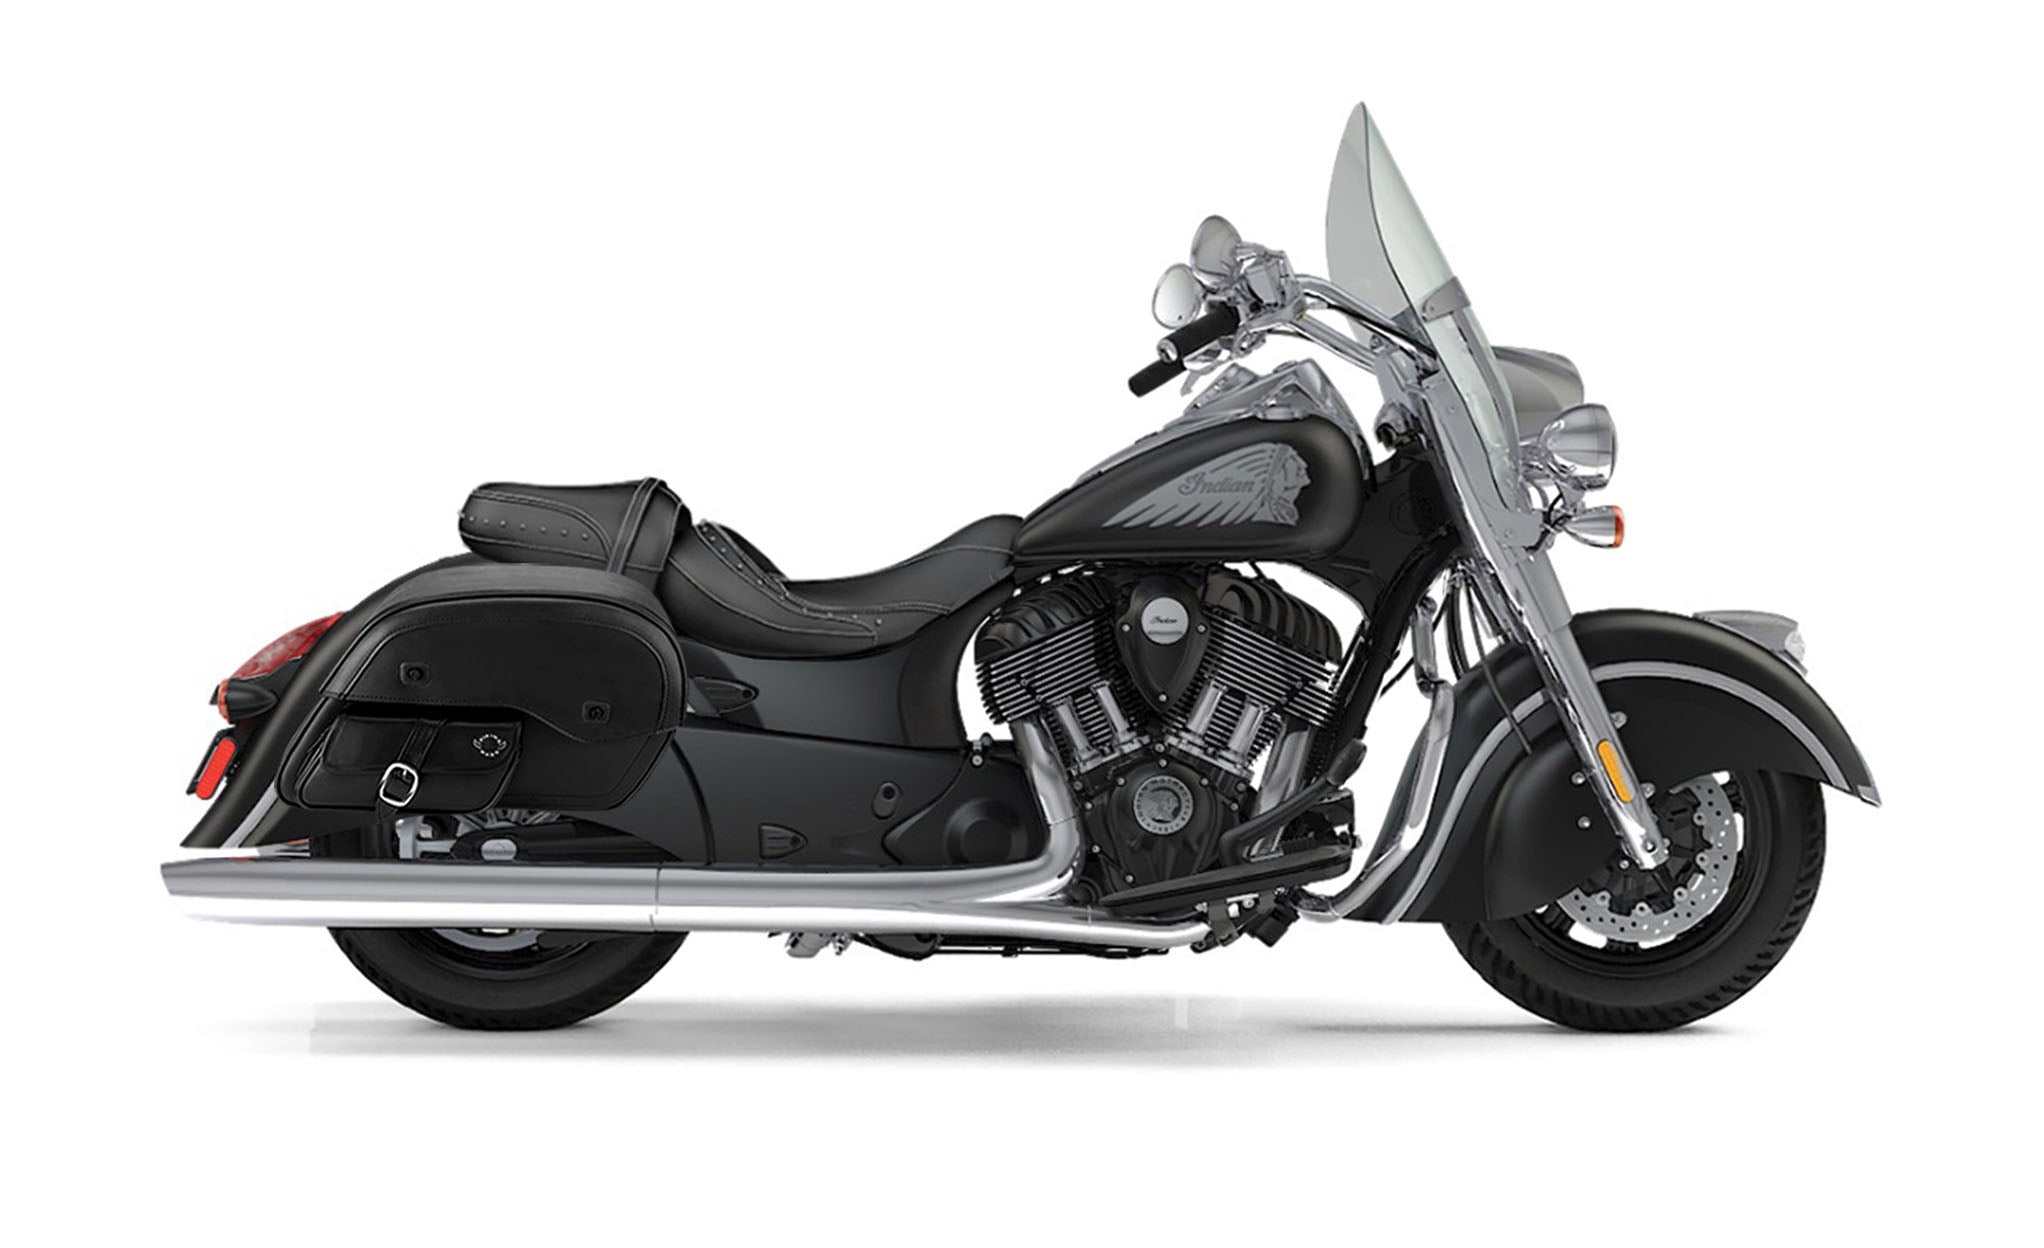 Viking Dweller Side Pocket Large Indian Springfield Leather Motorcycle Saddlebags on Bike Photo @expand